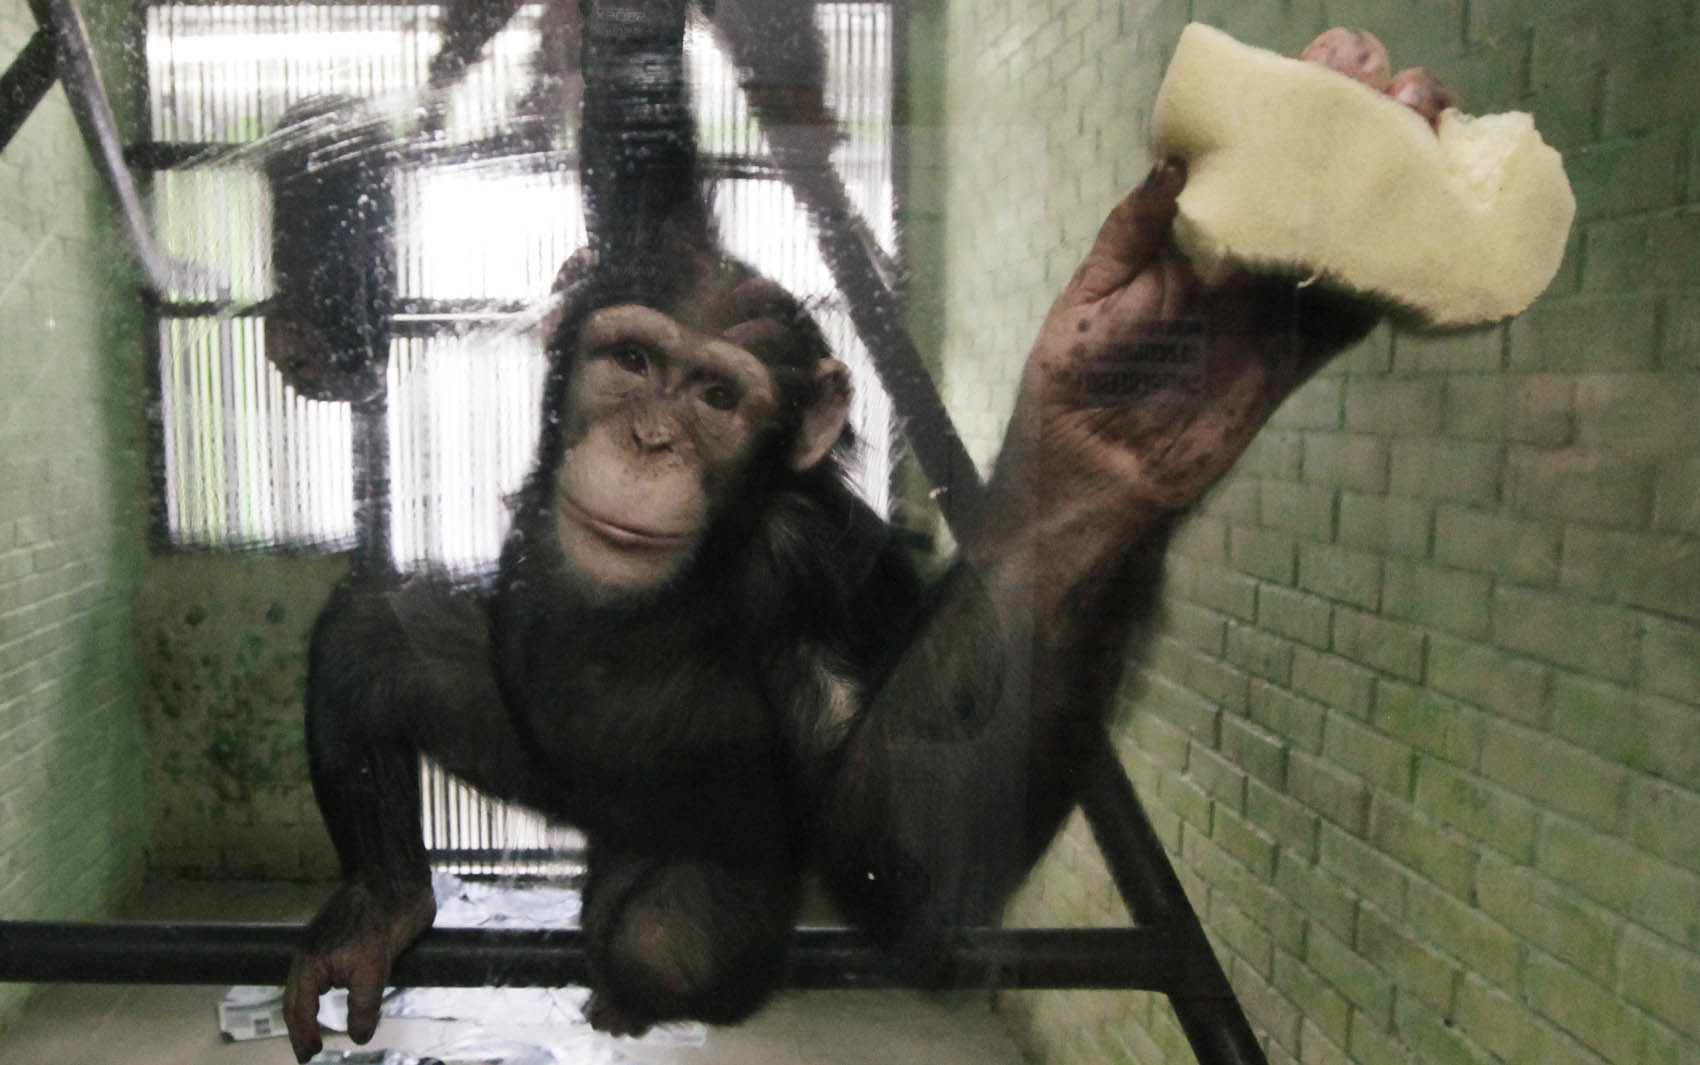 Anfisa, uma chimpanzé de 8 anos de idade, lava a janela de sua jaula, onde vive com um chimpanzé macho chamado Tikhon, no zoológico de Krasnoyarsk, na Sibéria. 